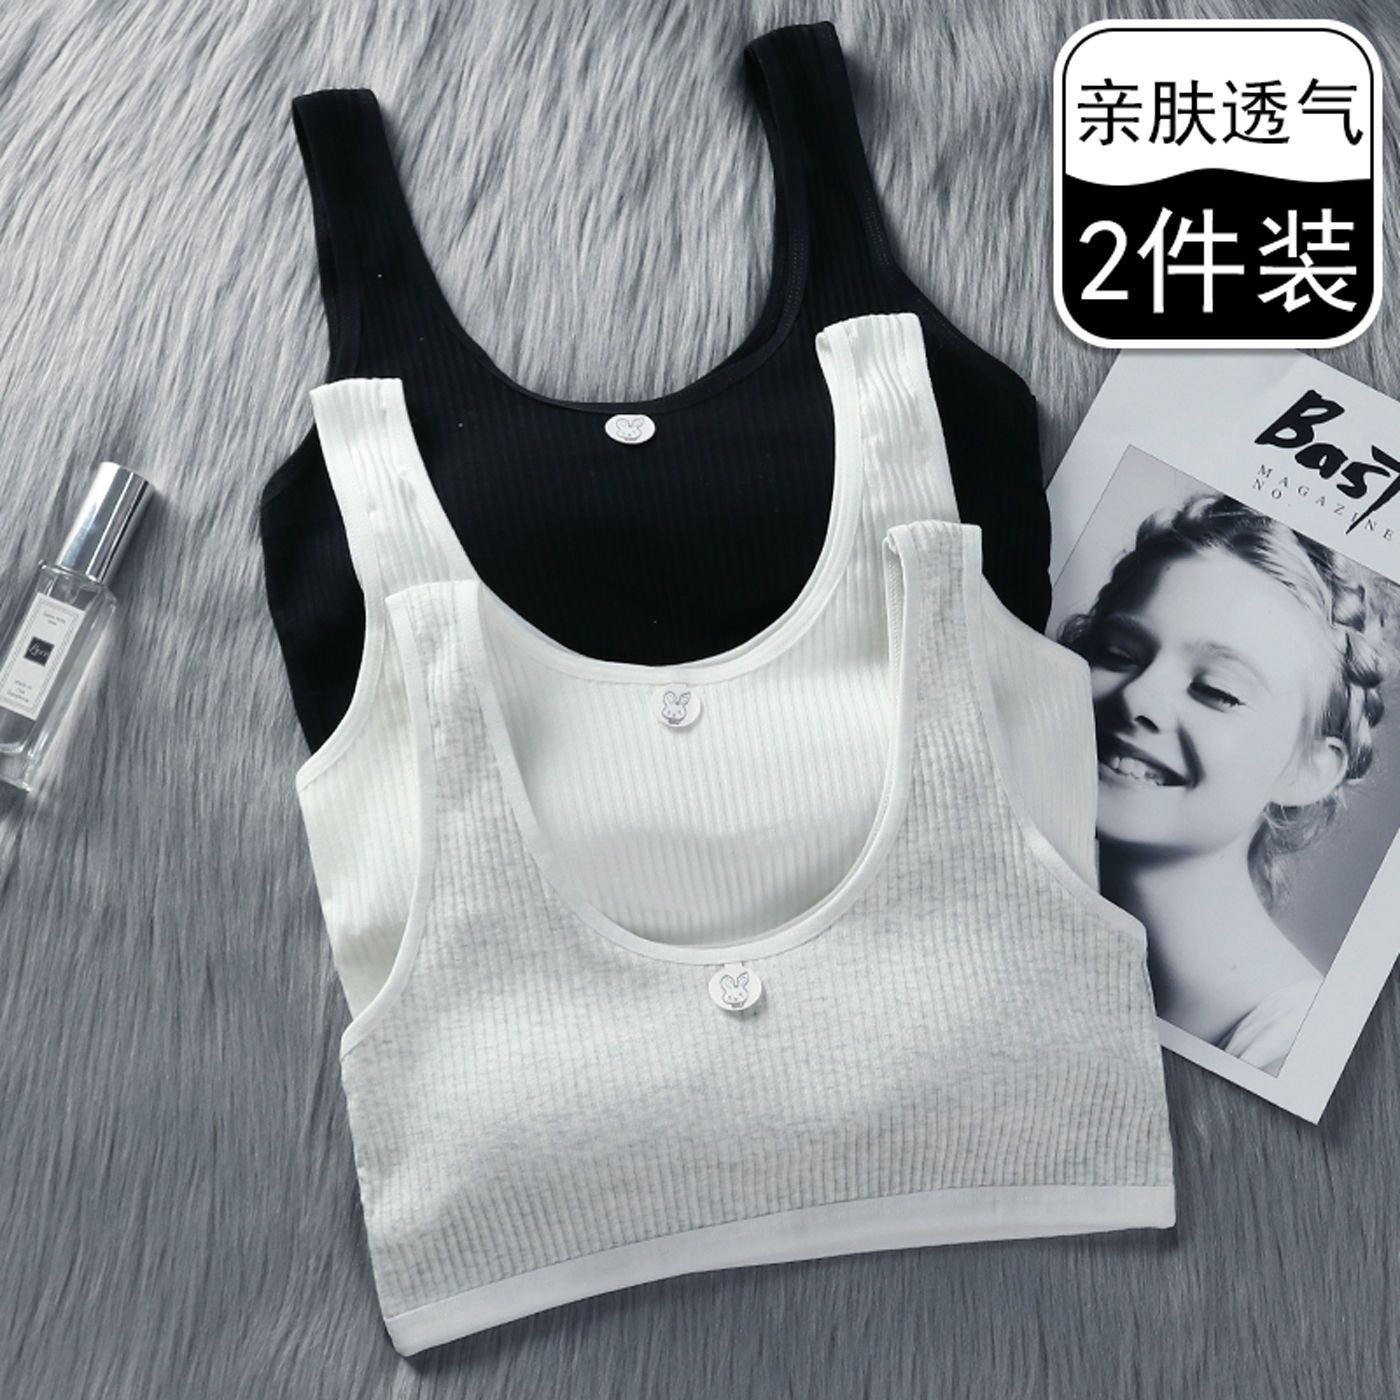 Girls' sports underwear pure cotton junior high school students' bra vest 9-12-13-14-15 years old